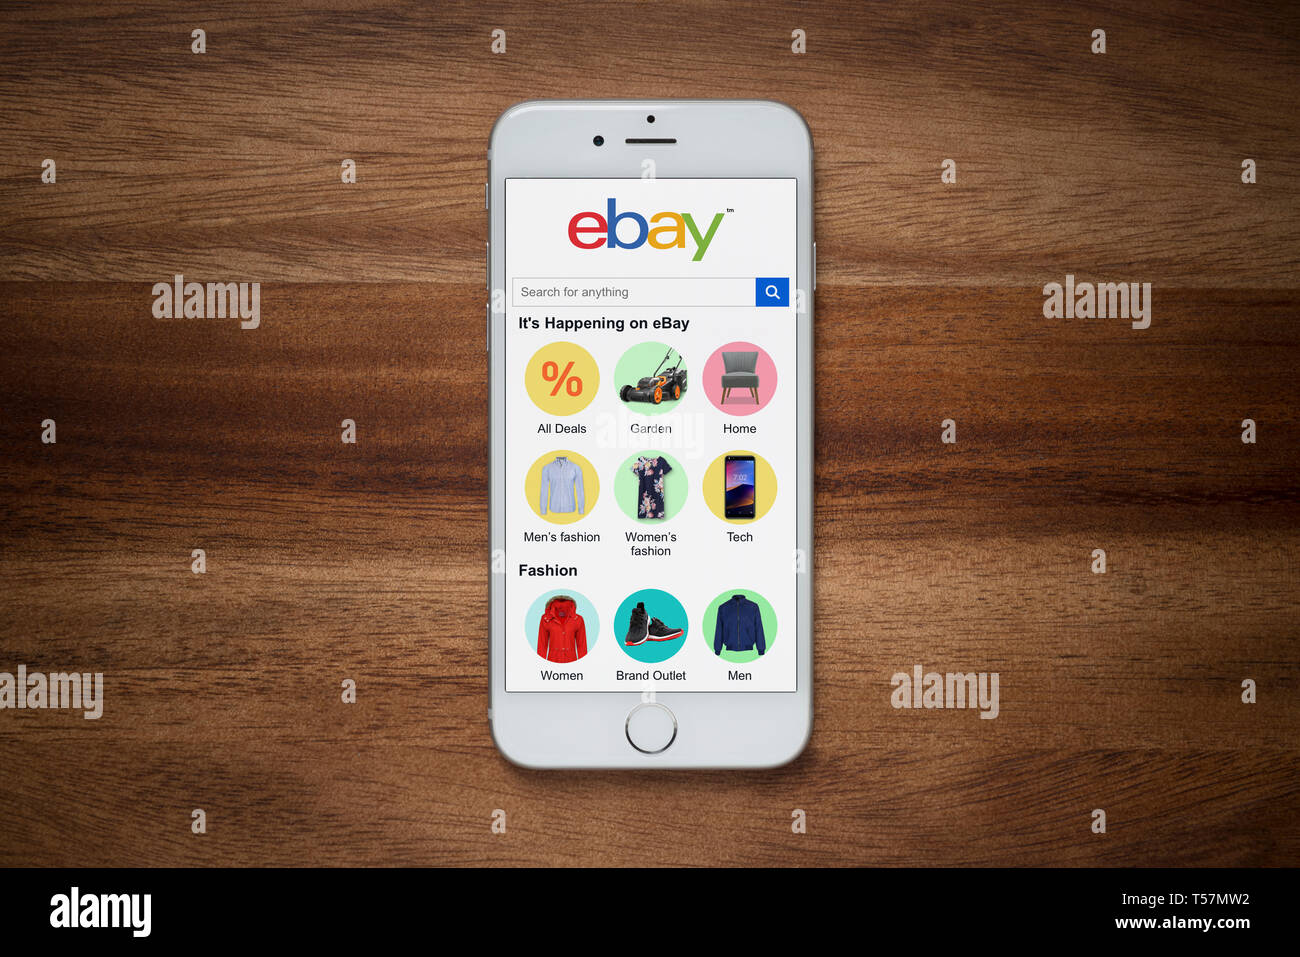 Un iPhone montrant le site web d'ebay repose sur une table en bois brut (usage éditorial uniquement). Banque D'Images